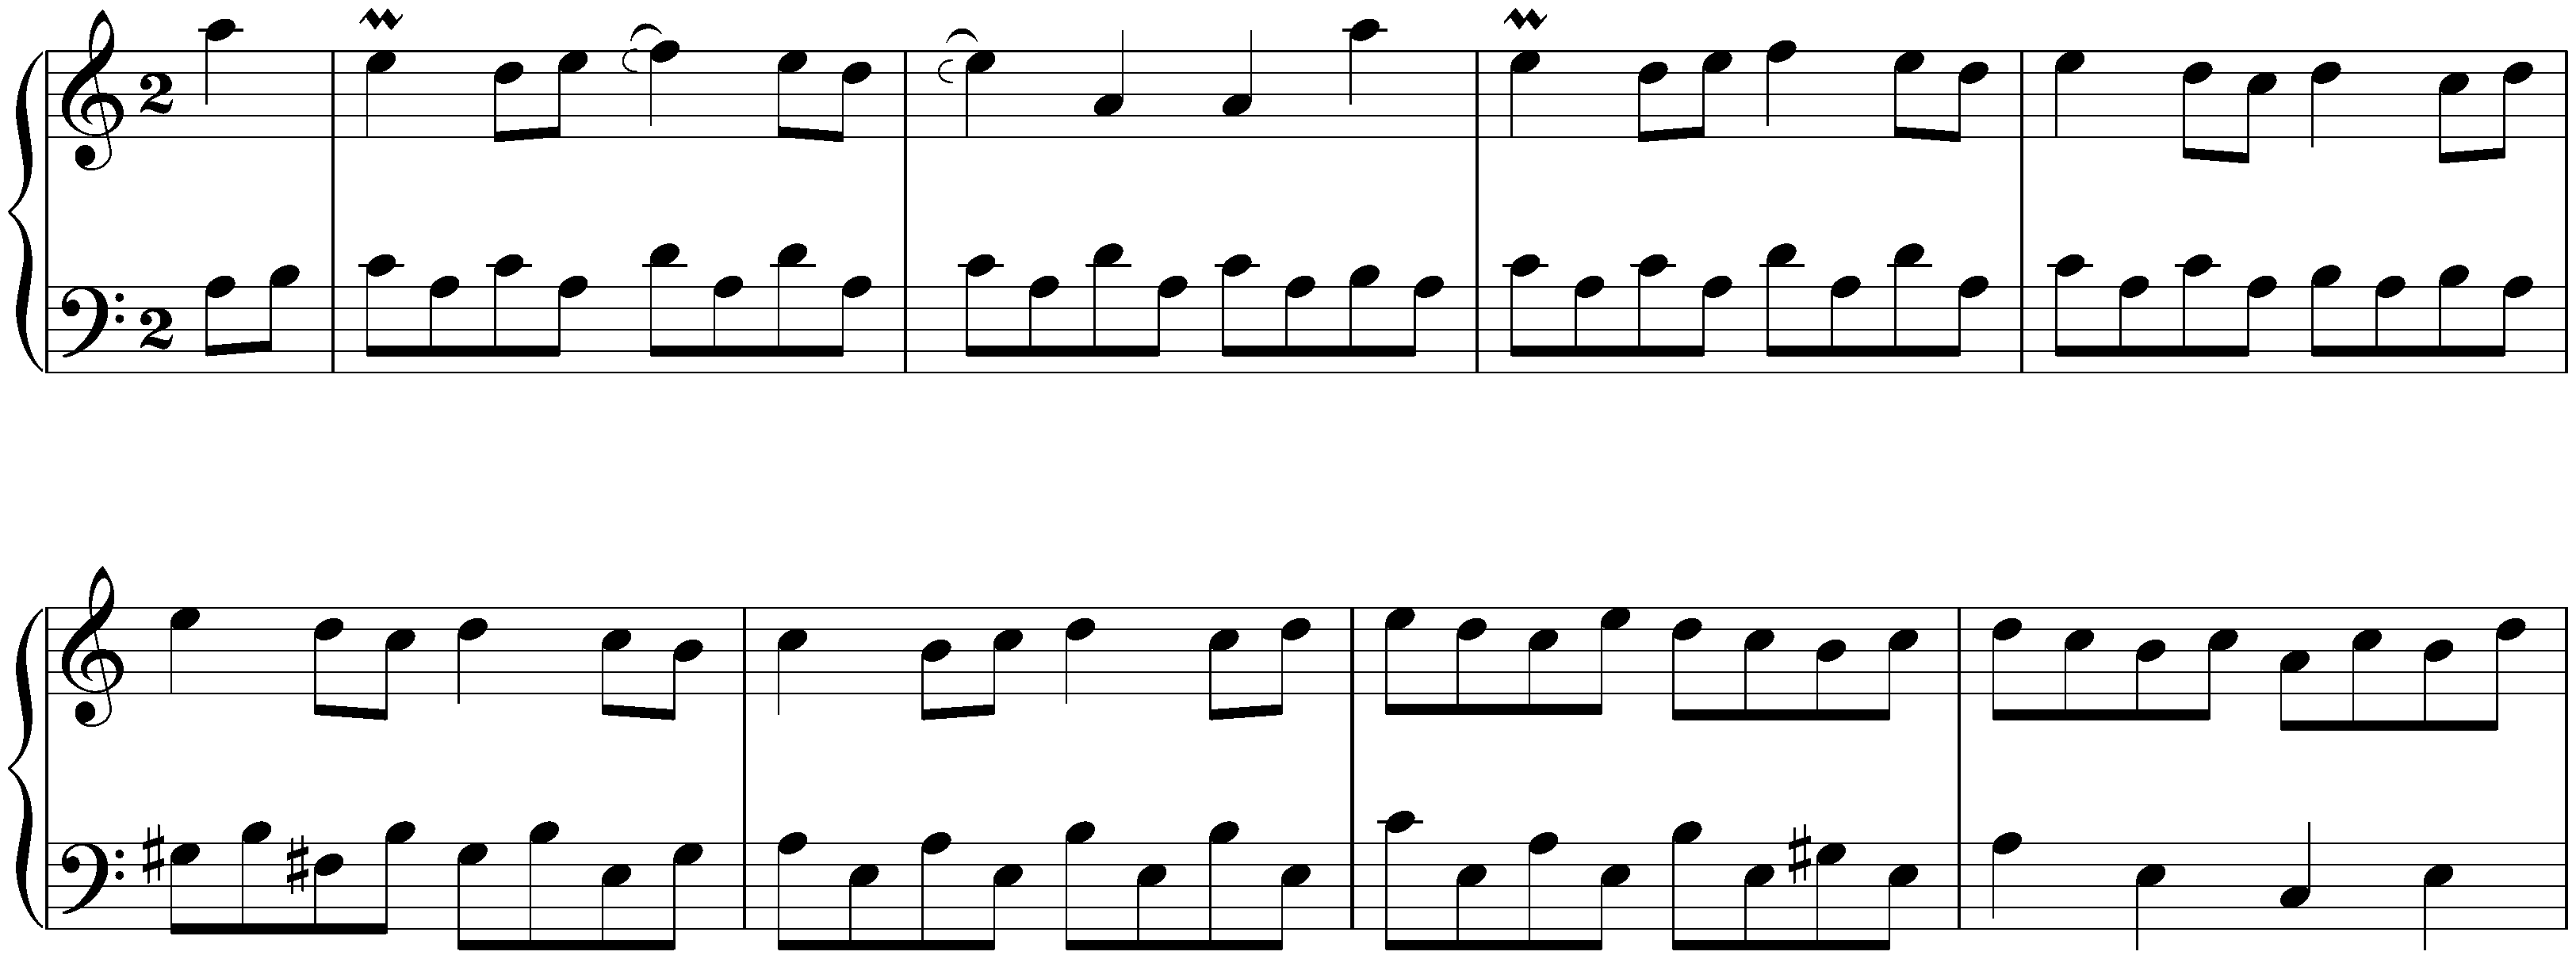 English Suite no. 2 in A minor, BWV 807; 5. Bourrée I – Bourrée II – Bourrée I